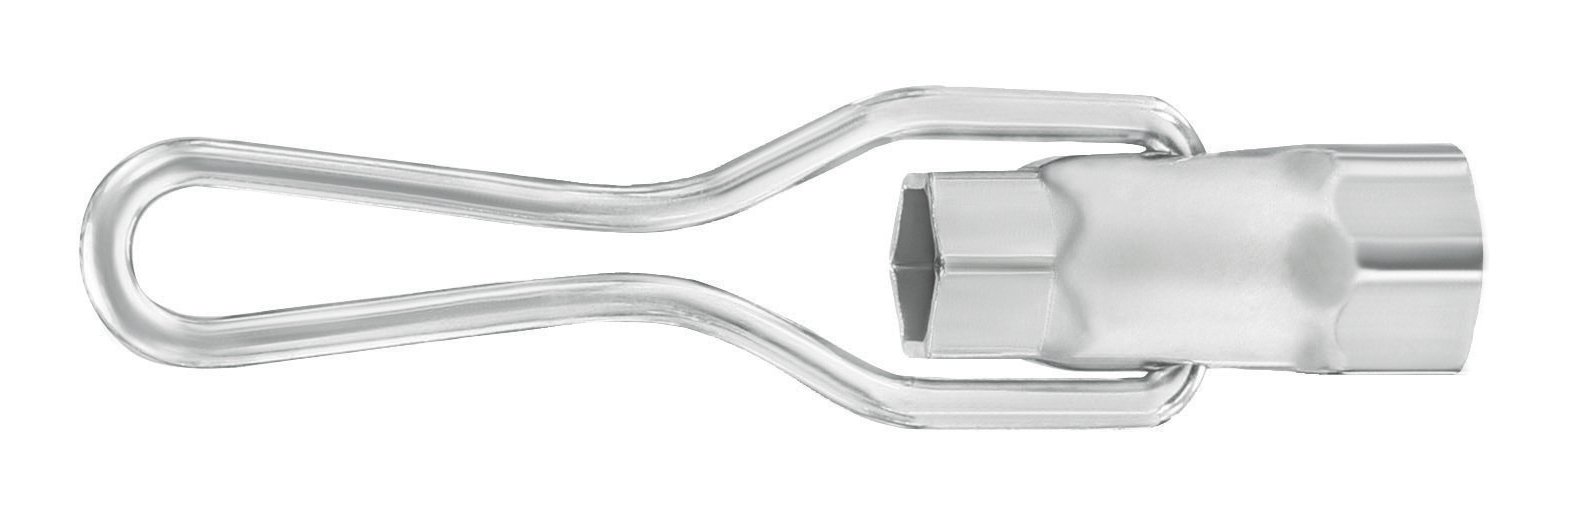 MATADOR Zündkerzenschlüssel mit Bügel, 16 x 21 mm, 0366 0001 von MATADOR Schraubwerkzeuge